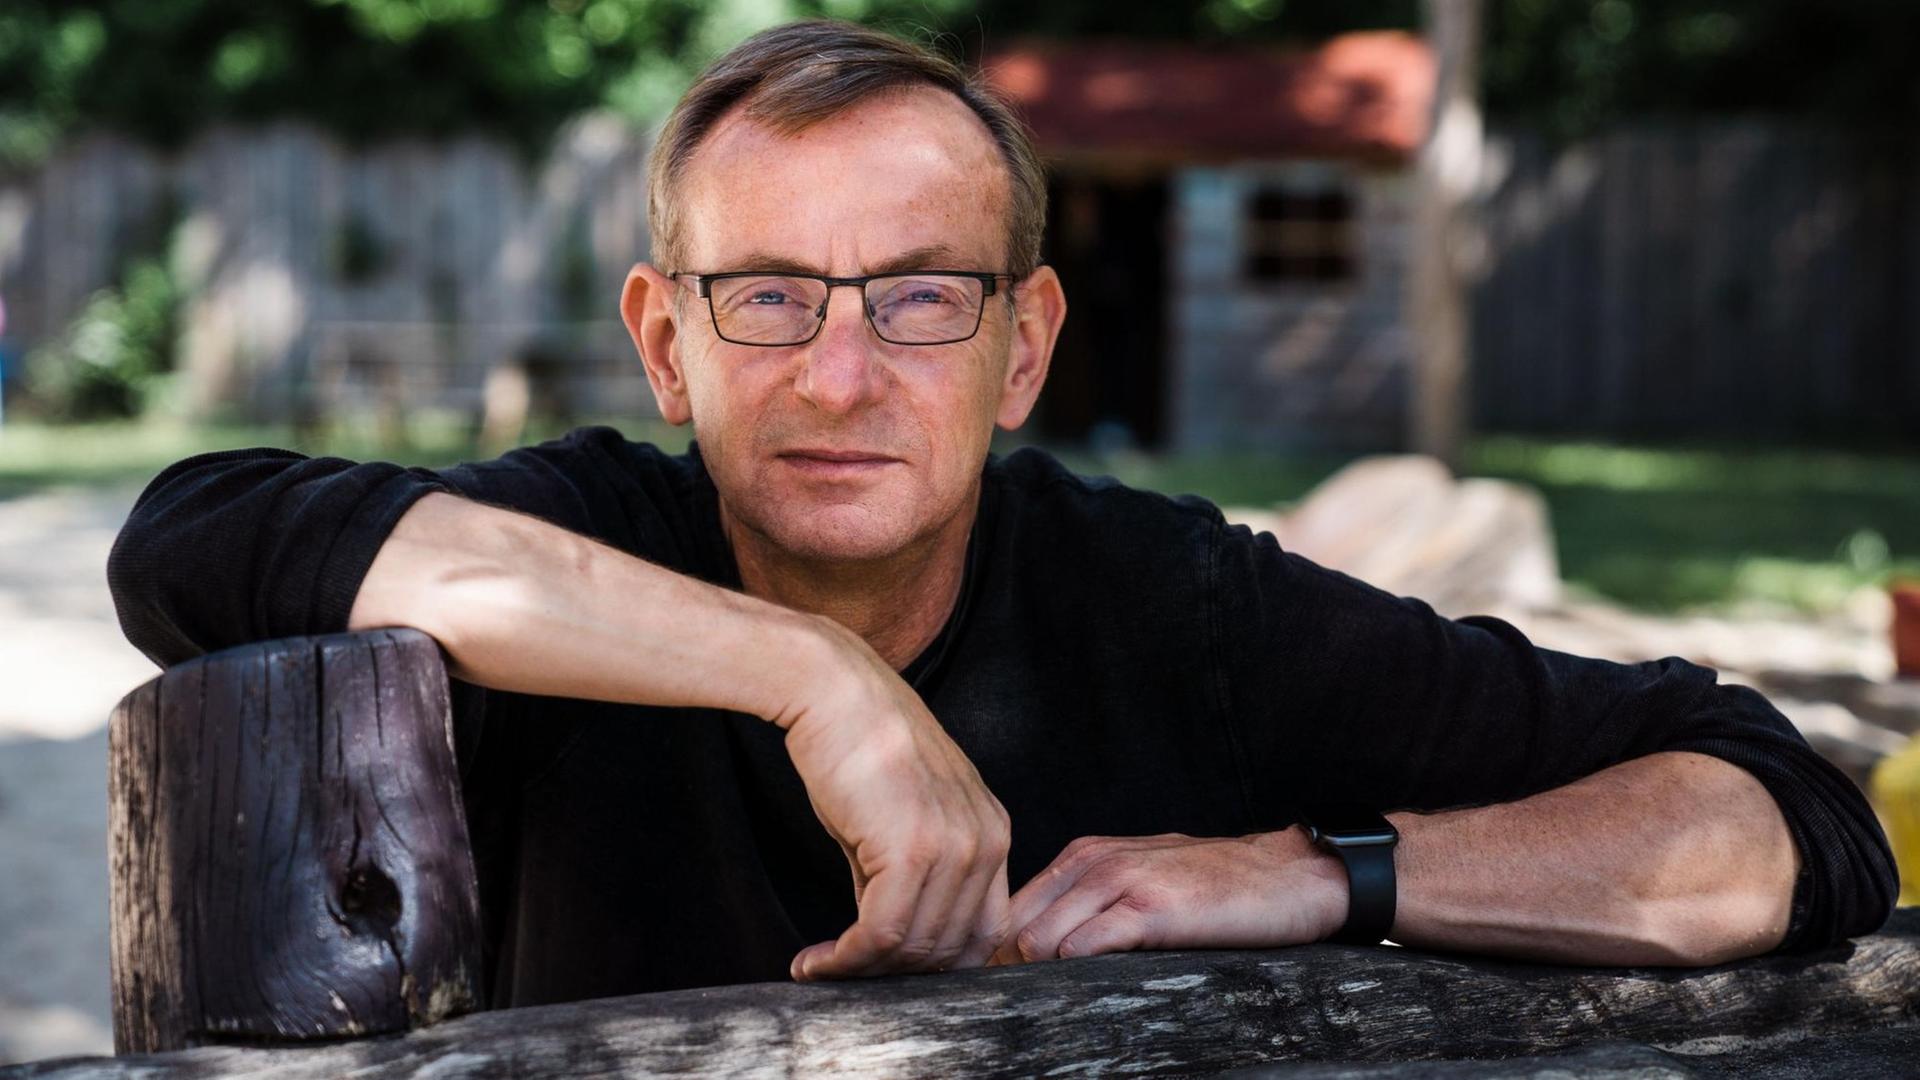 Bernd Siggelkow im Porträt im Freien. Er trägt einenn dunklen Pullover und eine Brille. Die Arme hat er vor sich auf einem Gegenstand aus Holz abgelegt.